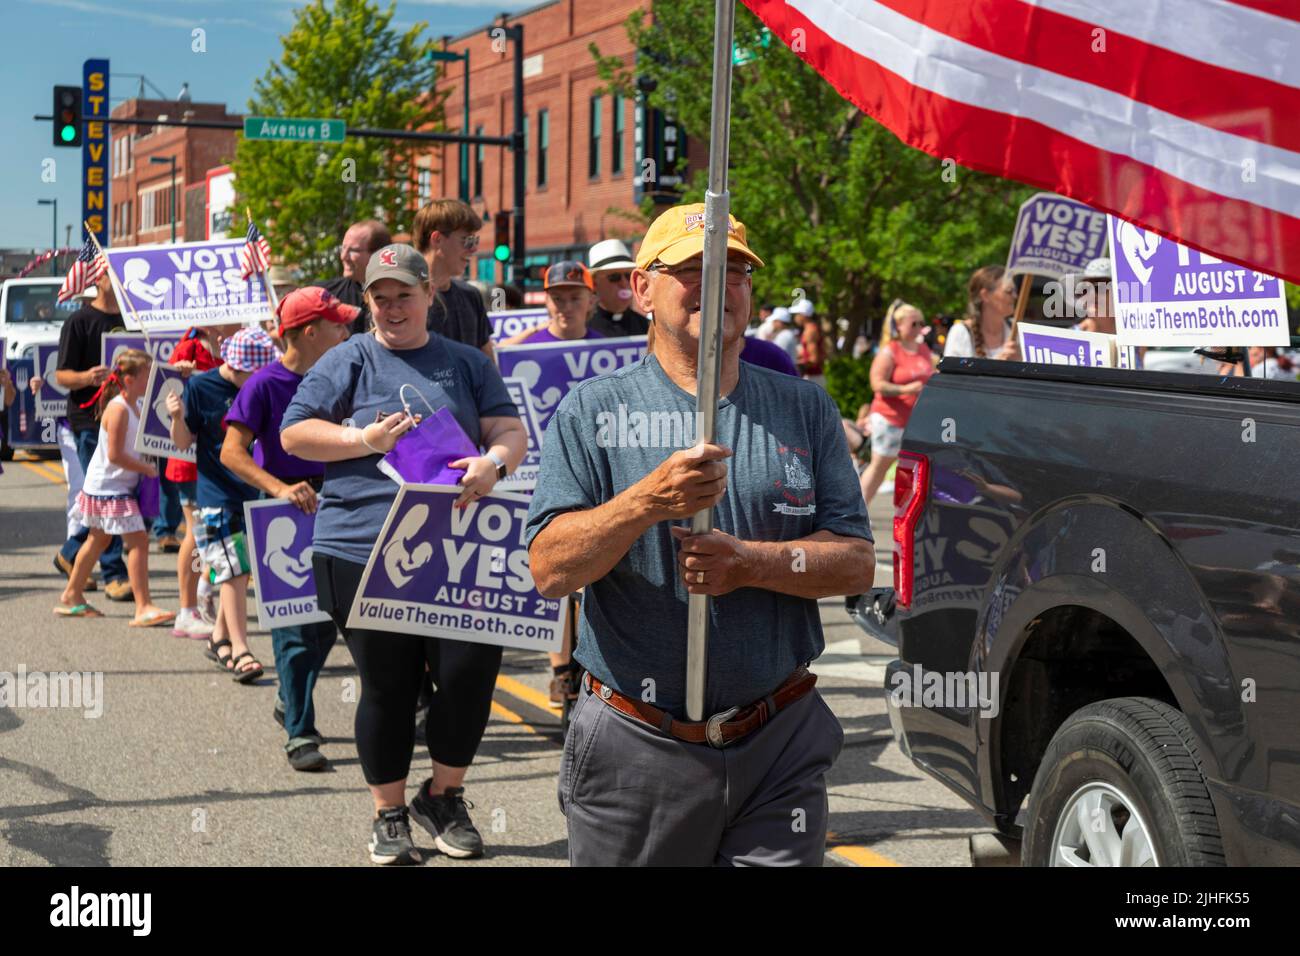 Hutchinson, Kansas - attivisti anti-aborto marciano nel luglio 4 l'annuale 'Patriots Parade', promuovendo l'emendamento costituzionale 'Value Them Both' Foto Stock